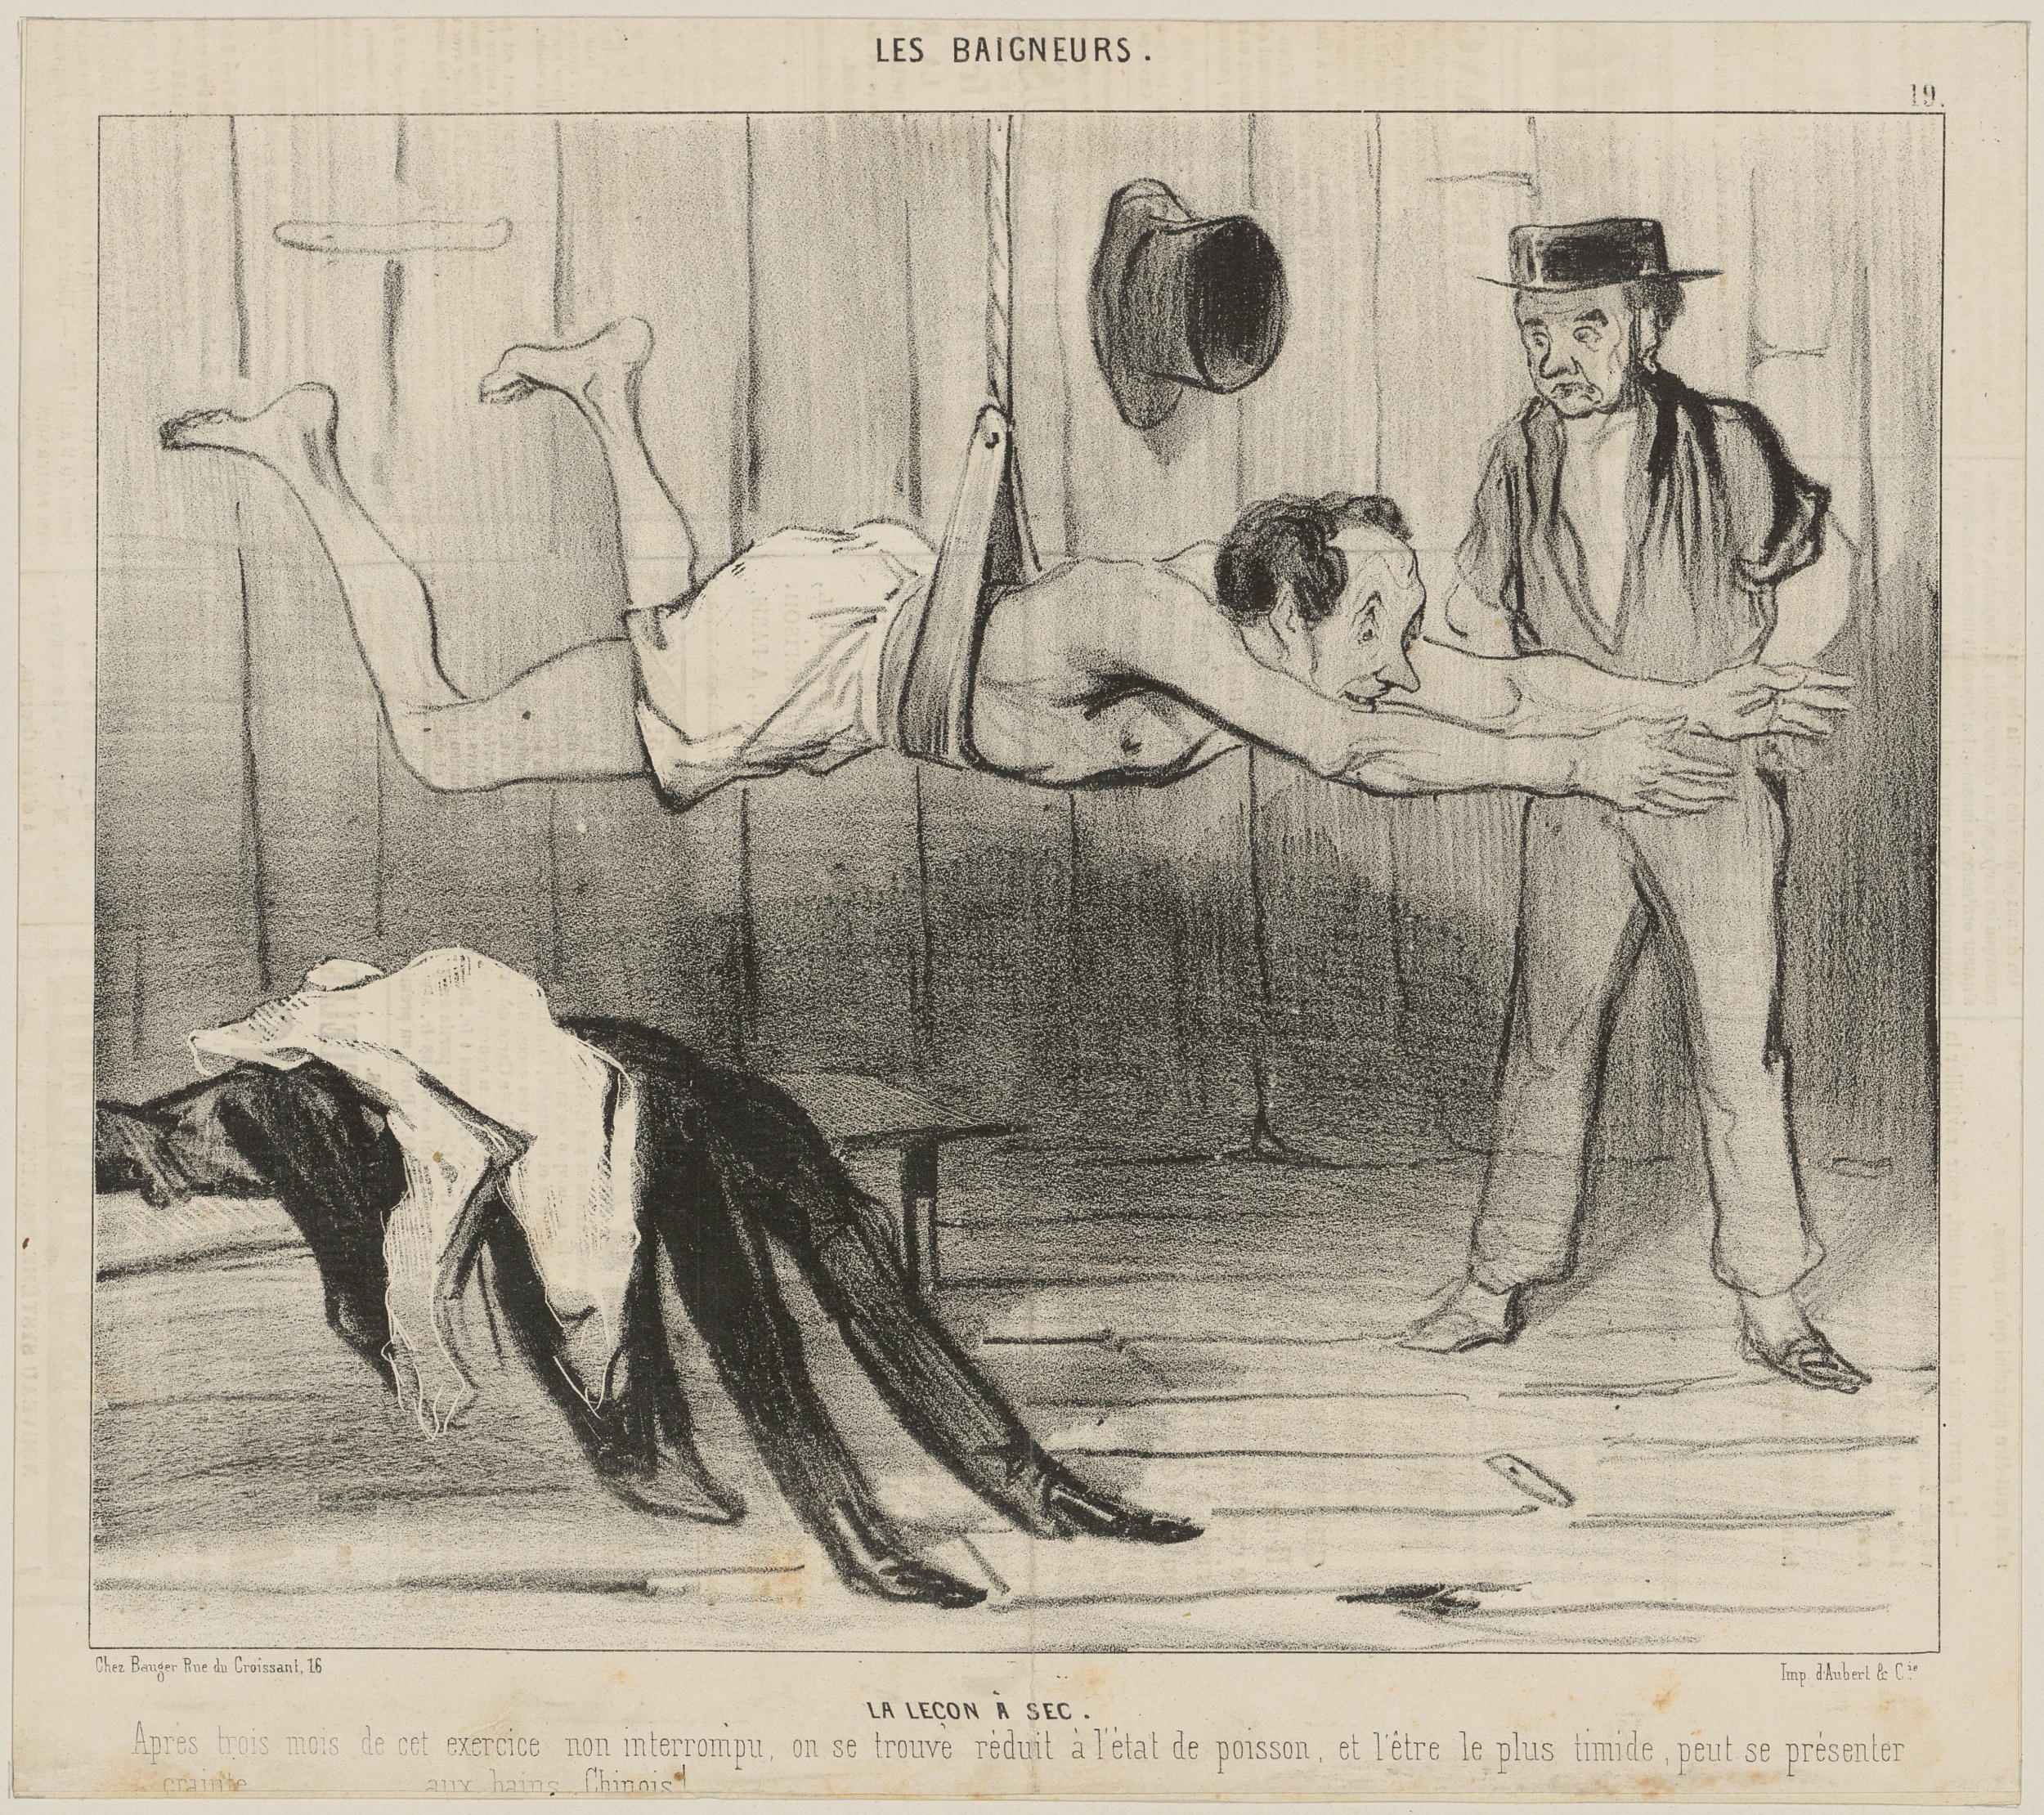 Honoré Daumier, La leçon à sec, 1841